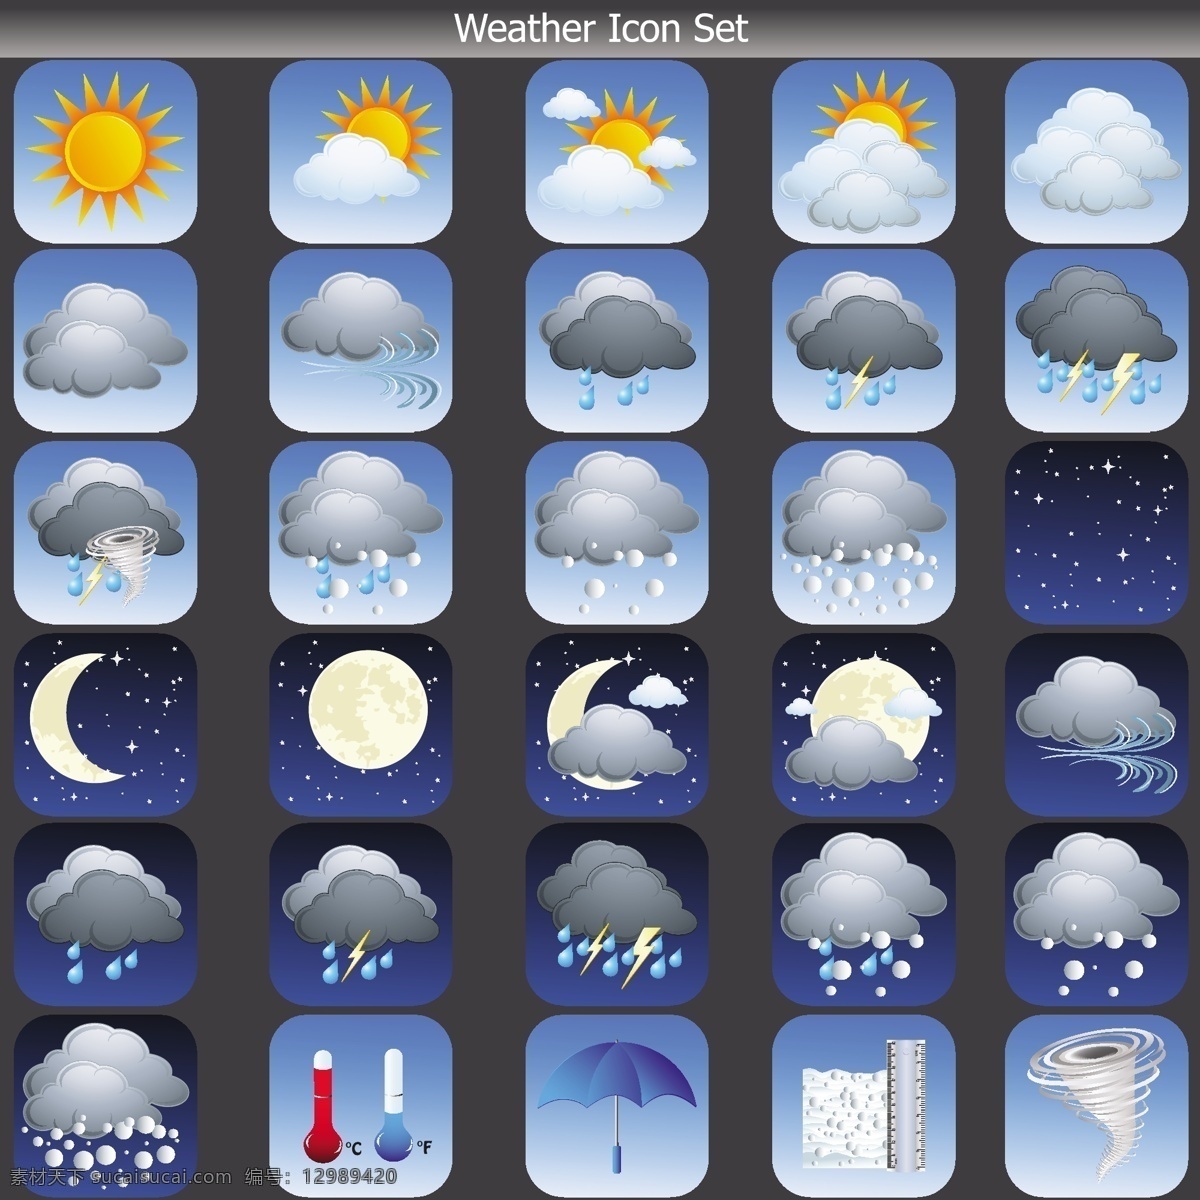 手机 天气 app 图标 app图标 矢量图 手机app 手机图标 天气app 矢量